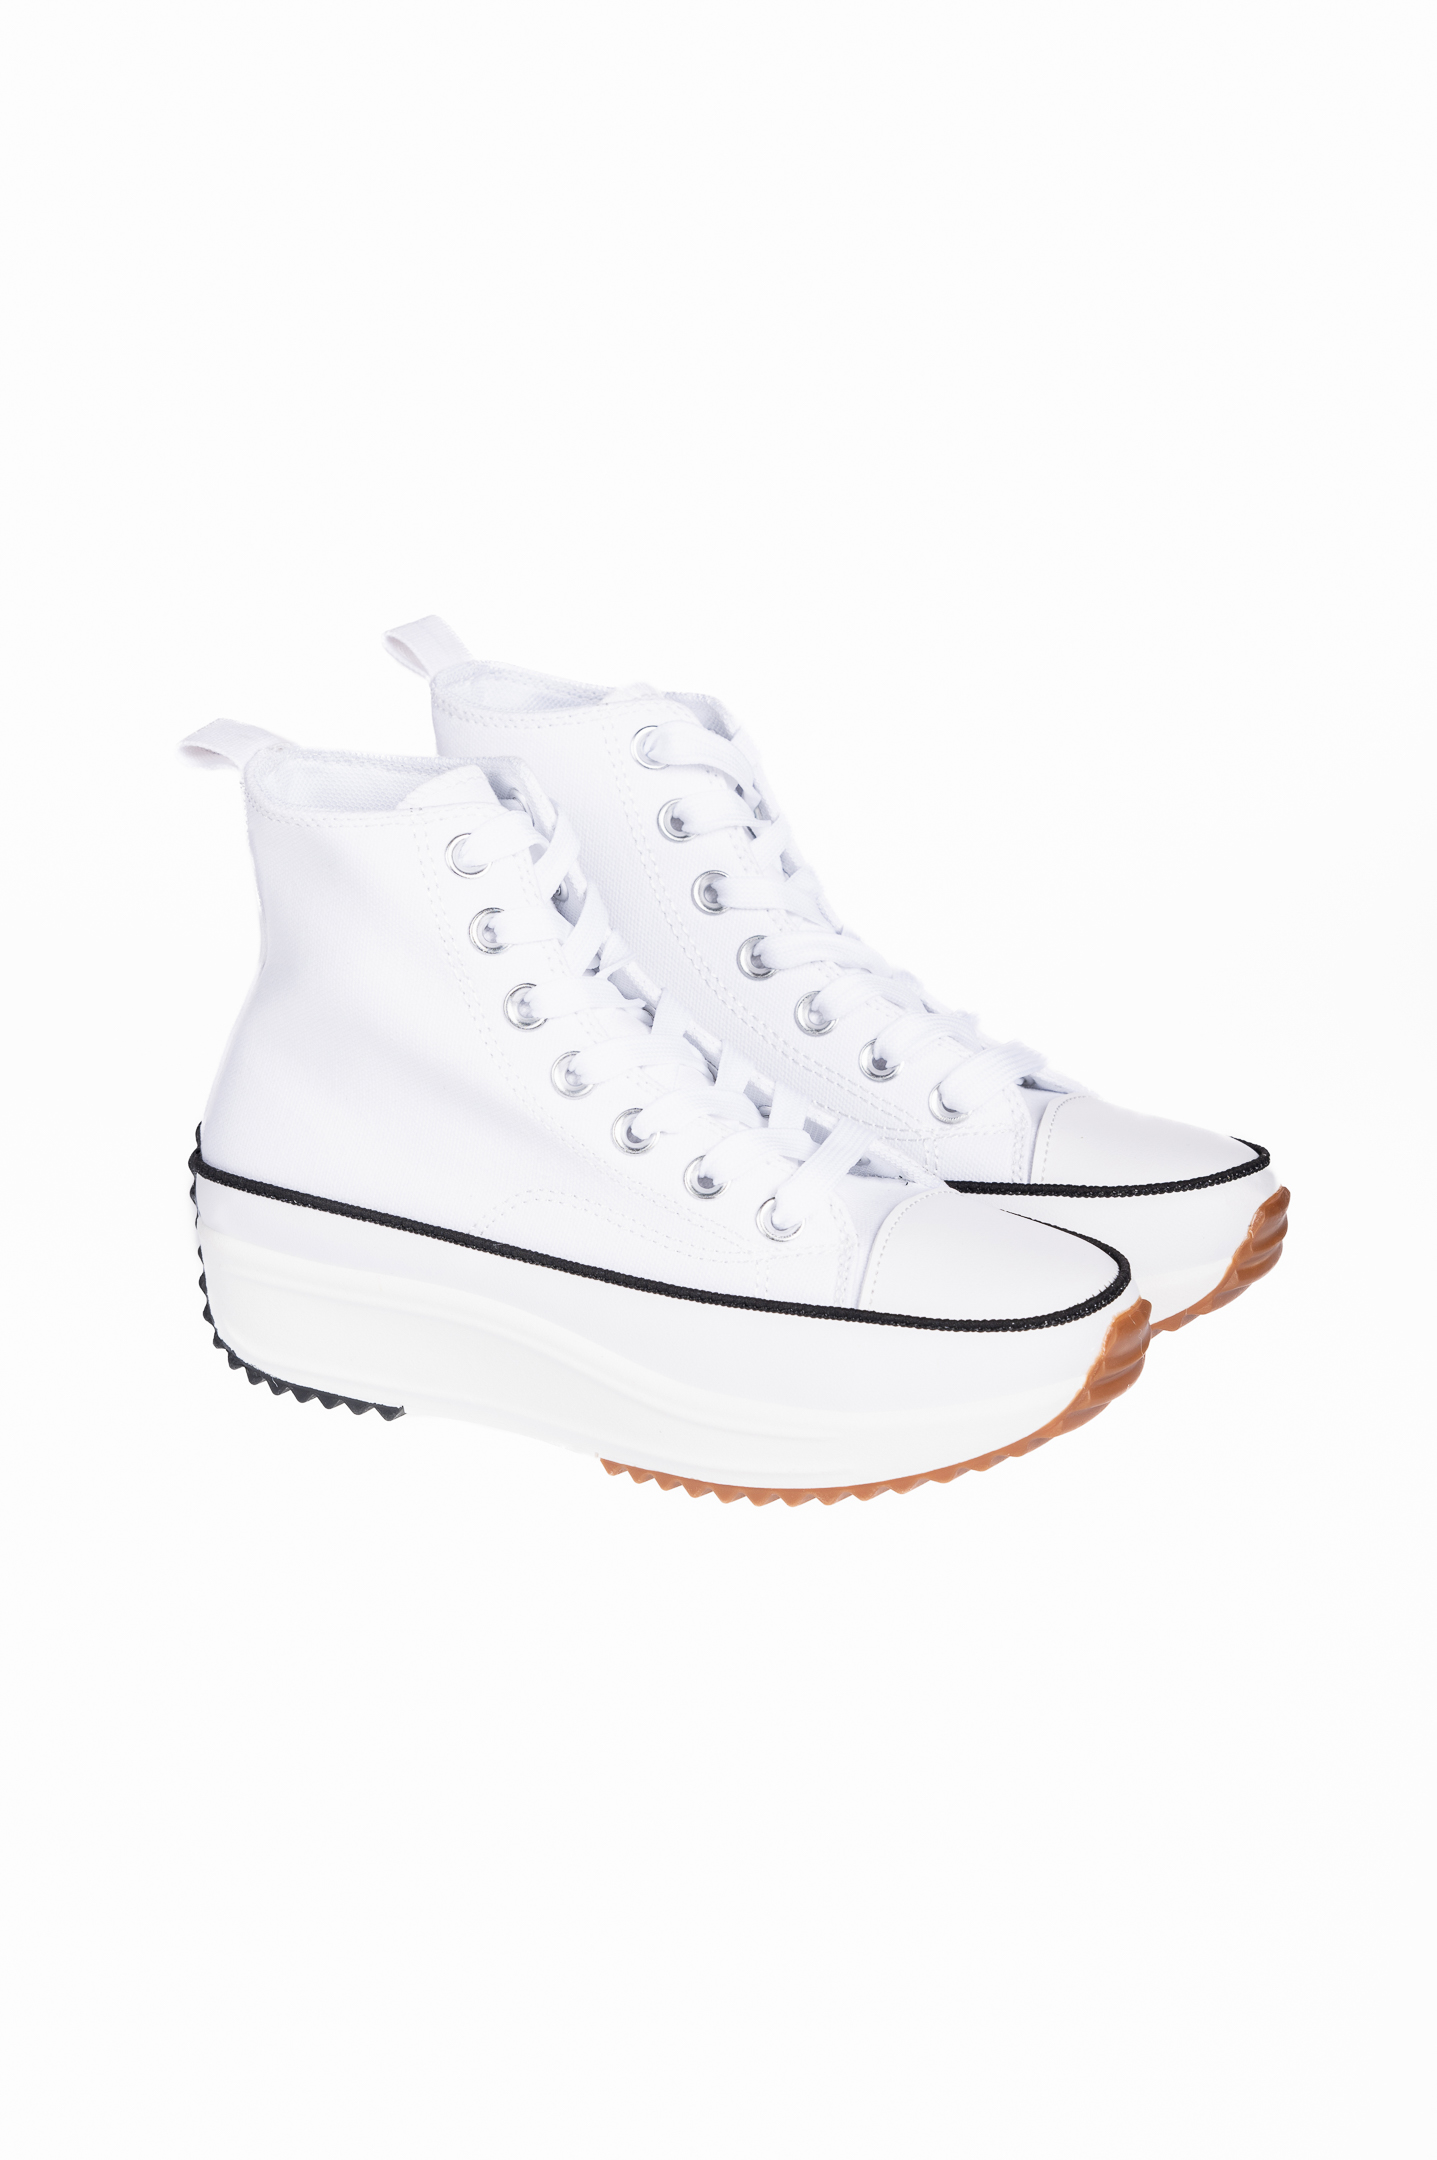 Παπούτσια > Sneakers Γυναικεία sneakers μποτάκια πάνινα - Λευκό